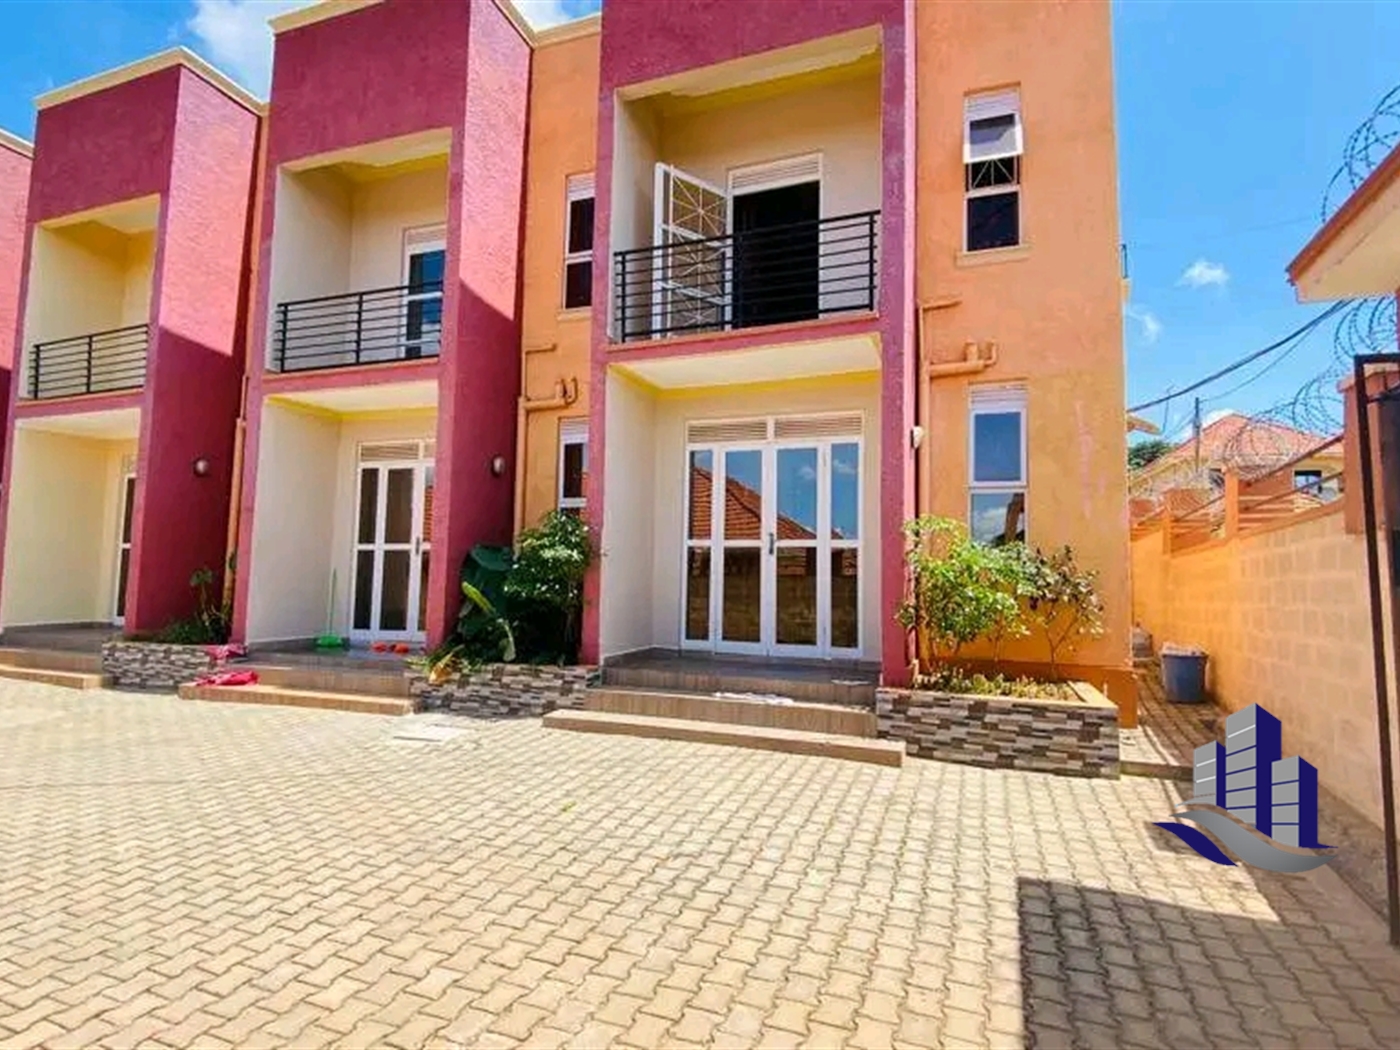 Apartment block for sale in Bukasa Kampala